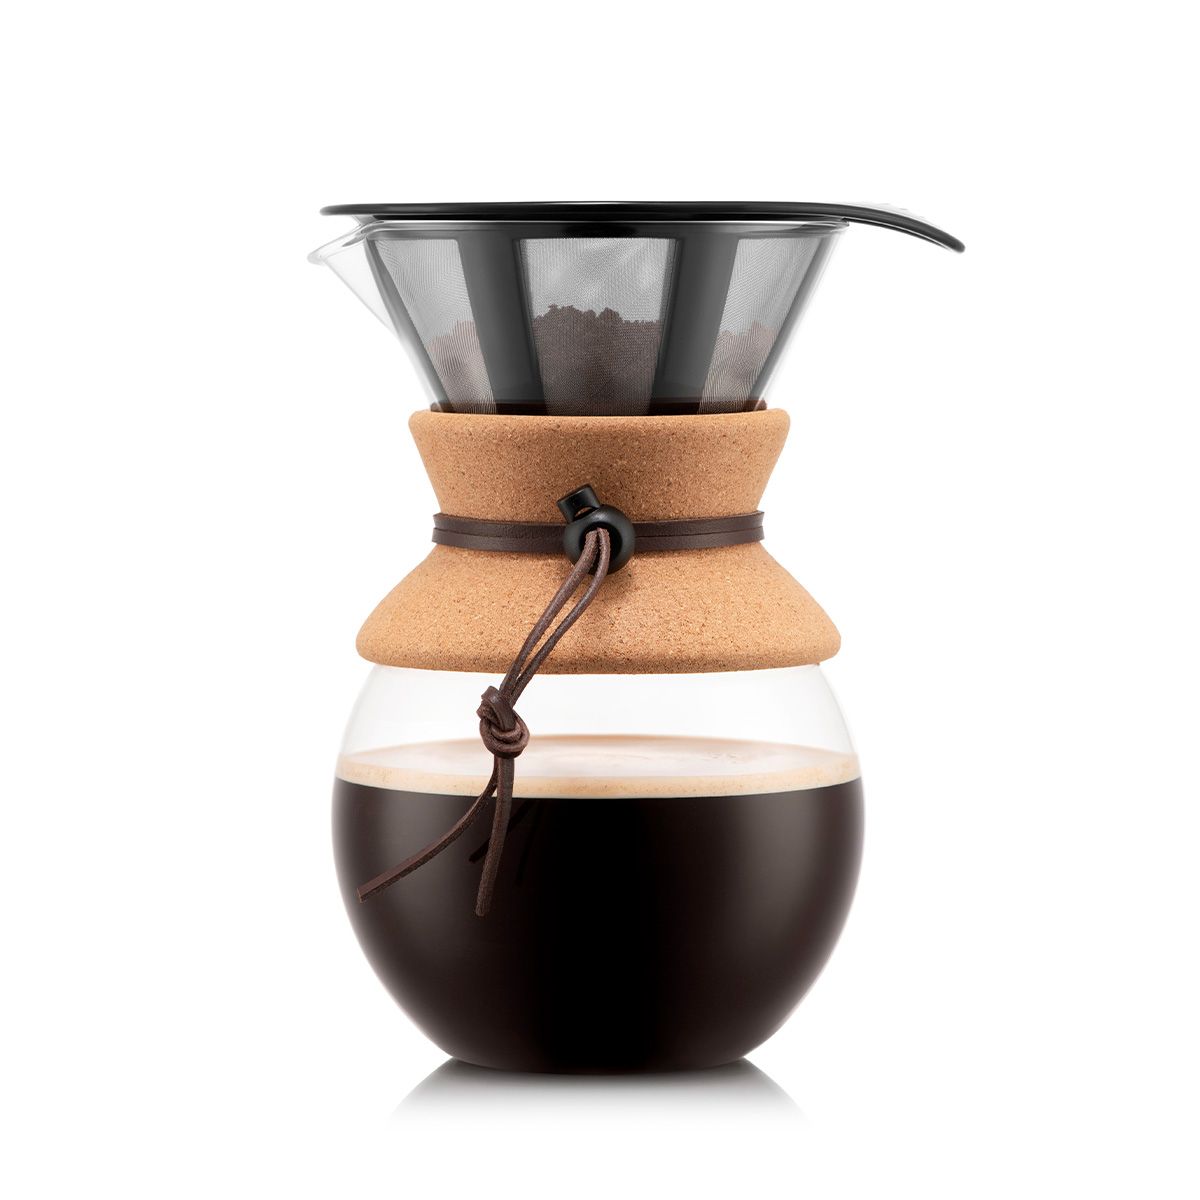 Bodum häll över kaffebryggare med permanent kaffefilterkork, 8 koppar